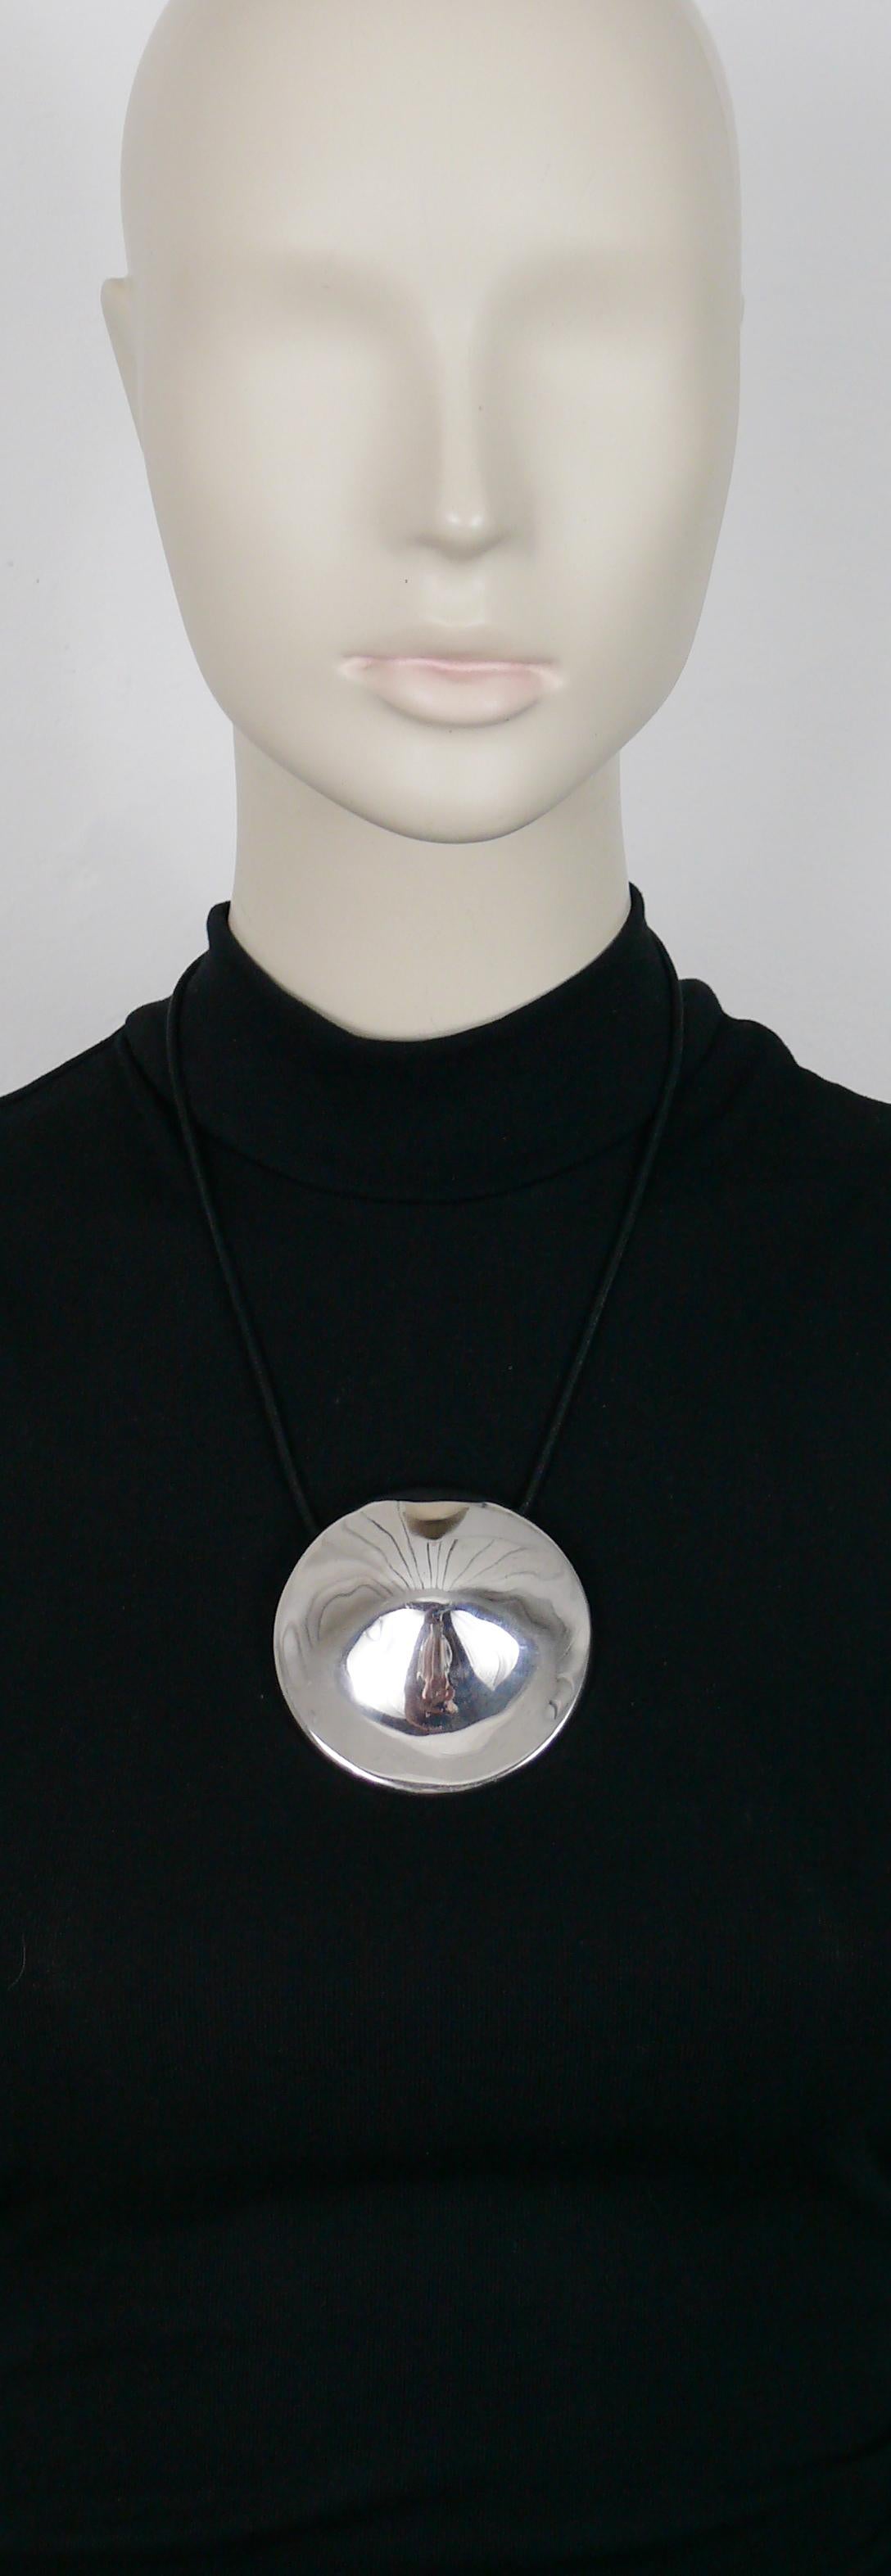 THIERRY MUGLER Anhänger-Halskette mit einer massiven, geschwungenen Scheibe aus Sterlingsilber, die durch eine Politur einen Spiegeleffekt erhält.

Schwarze, schlauchförmige, geflochtene Kordel.

Geprägtes THIERRY MUGLER.
Vollständig gestempelt mit